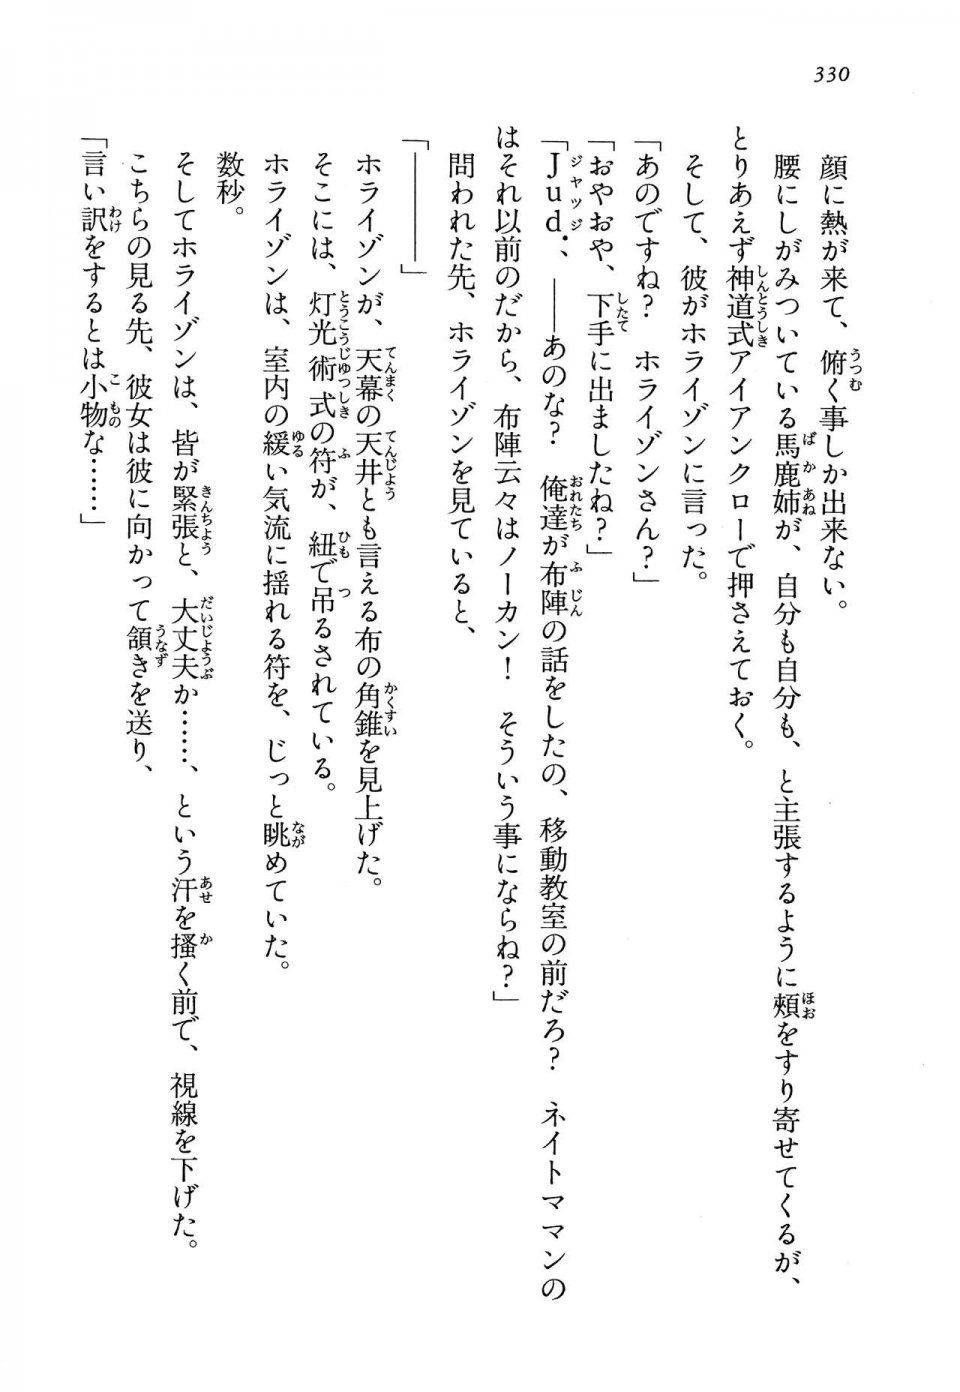 Kyoukai Senjou no Horizon LN Vol 13(6A) - Photo #330